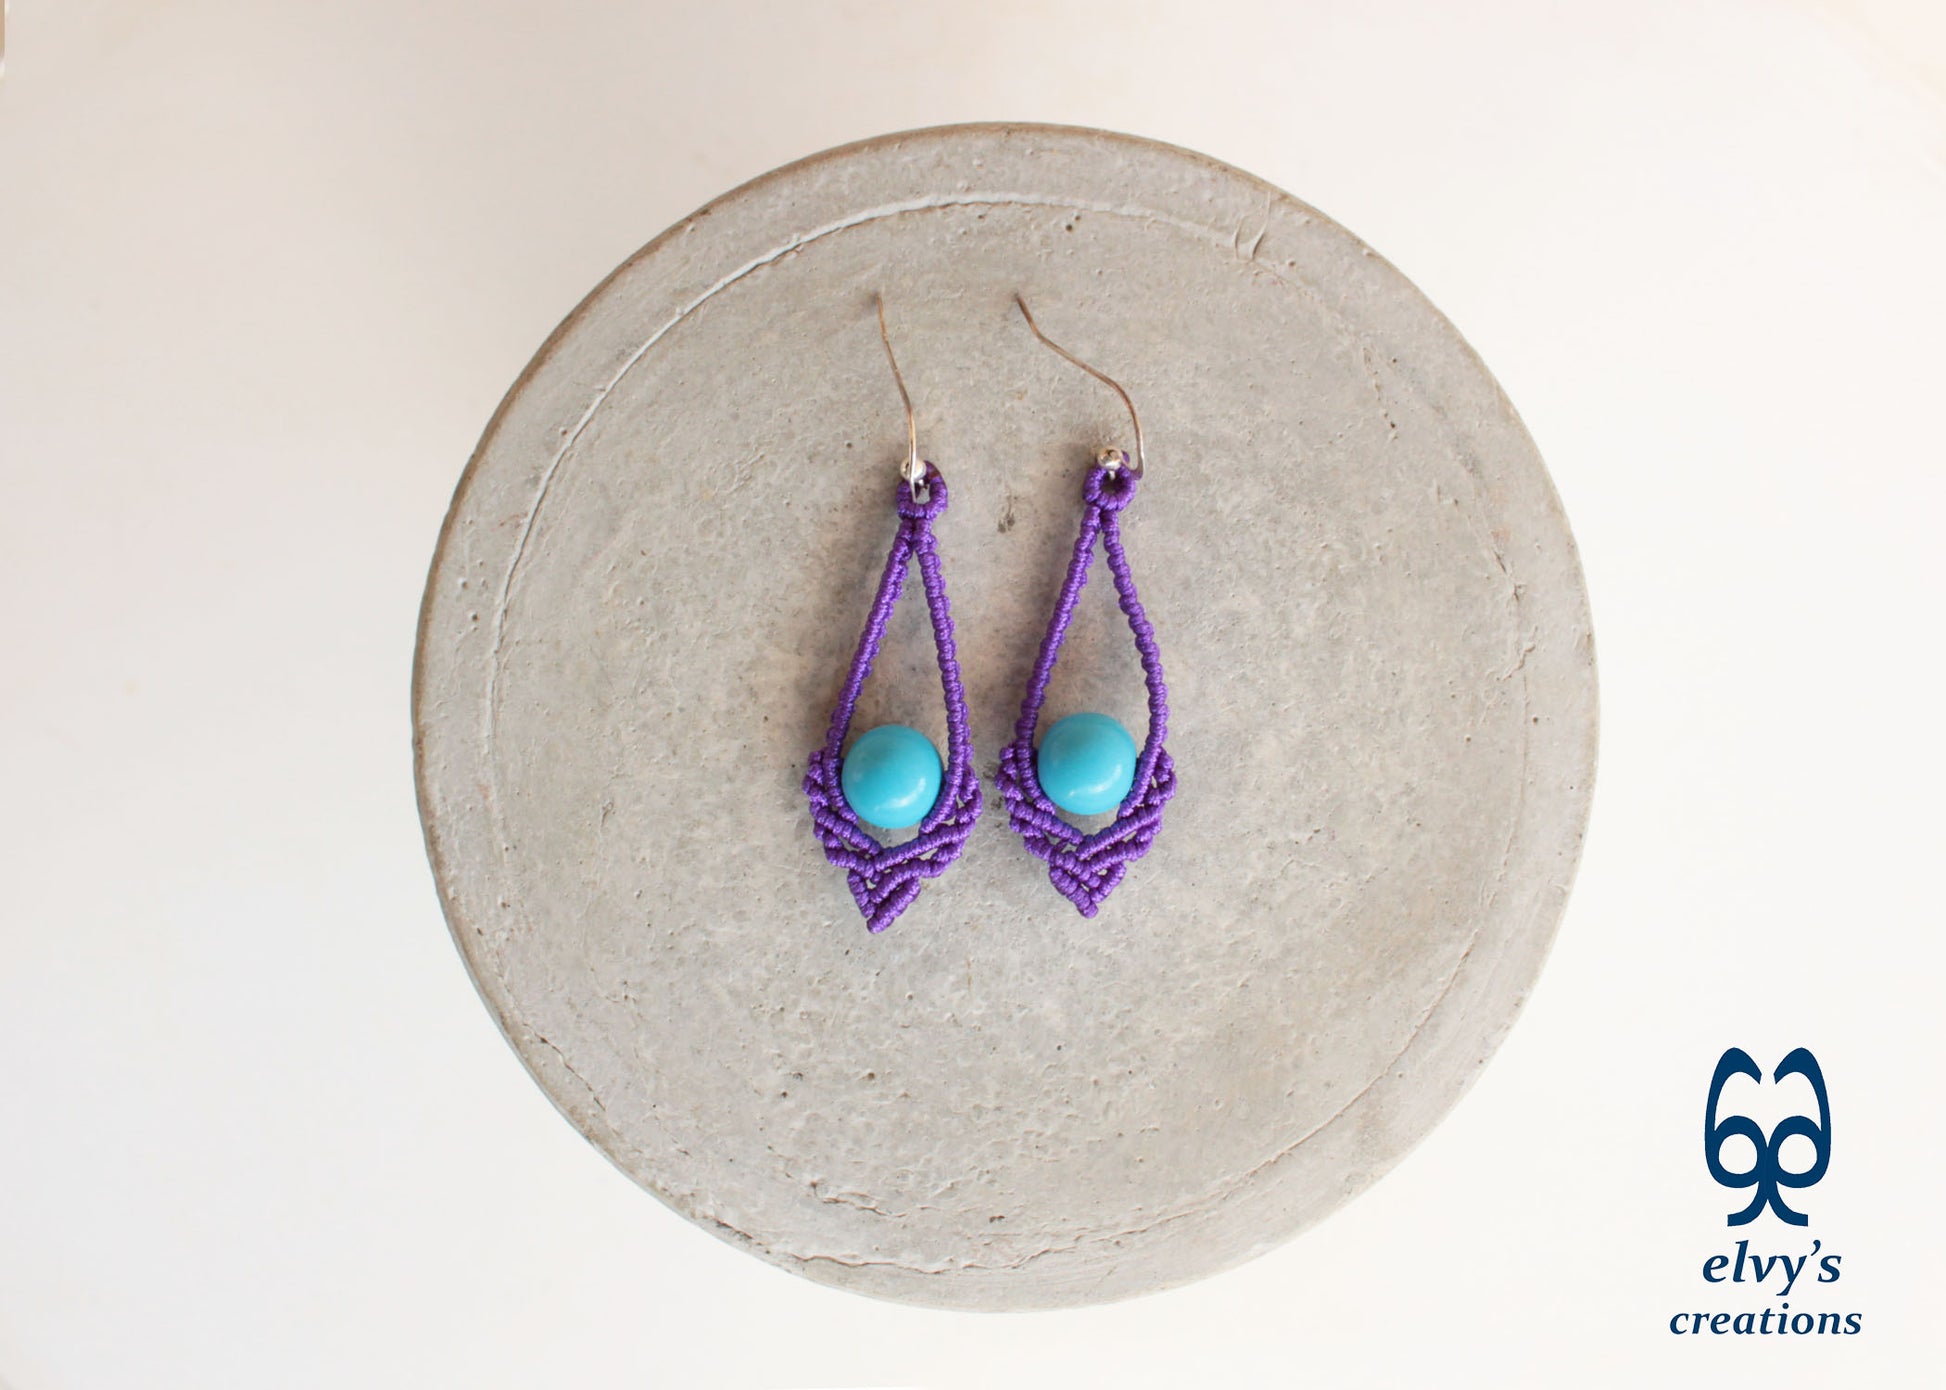 Purple Macrame Earrings Handmade Silver Earrings with Turquoise Gemstones